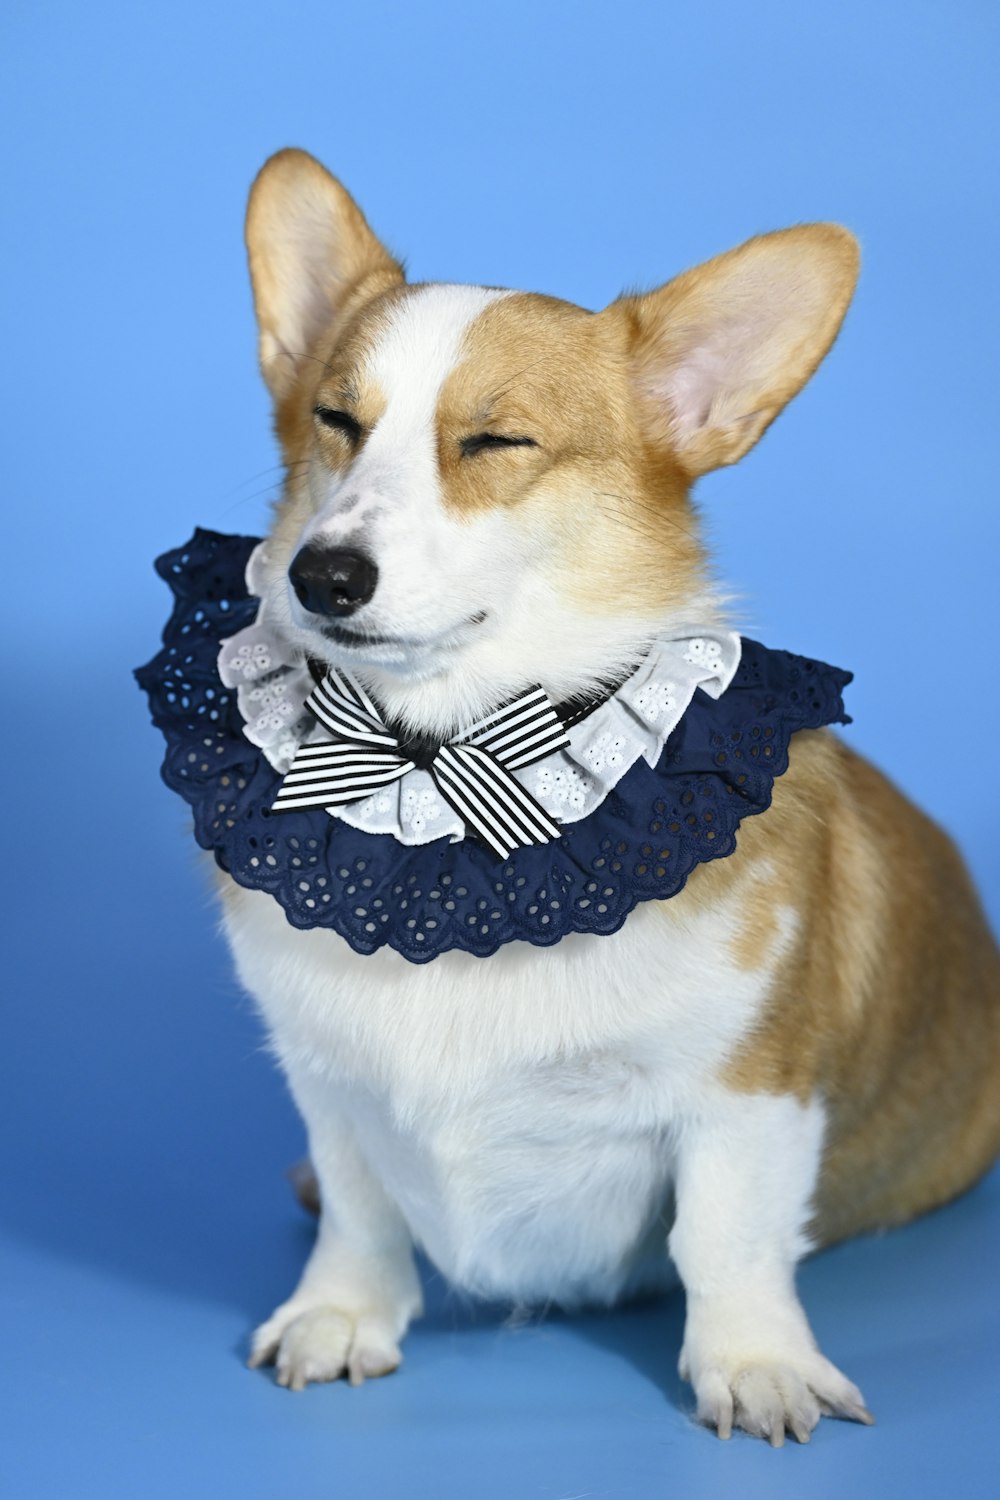 a corgi dog wearing a blue collar